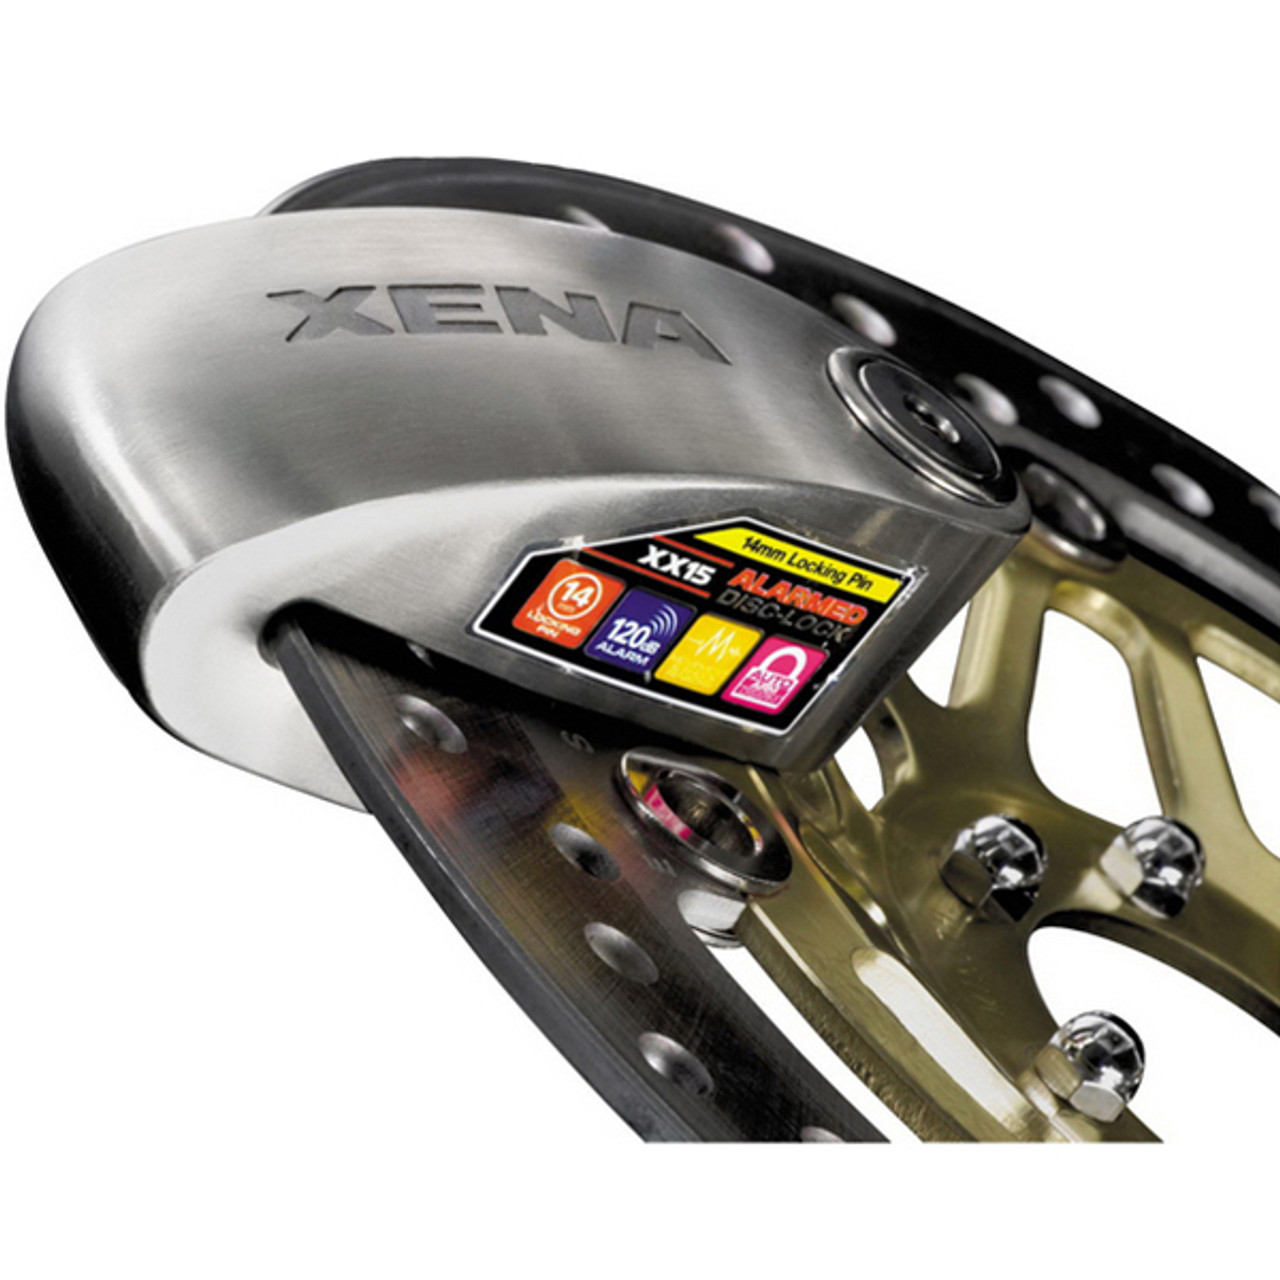 Xena XX-15 Disc-Lock Alarm - Sportbike Track Gear